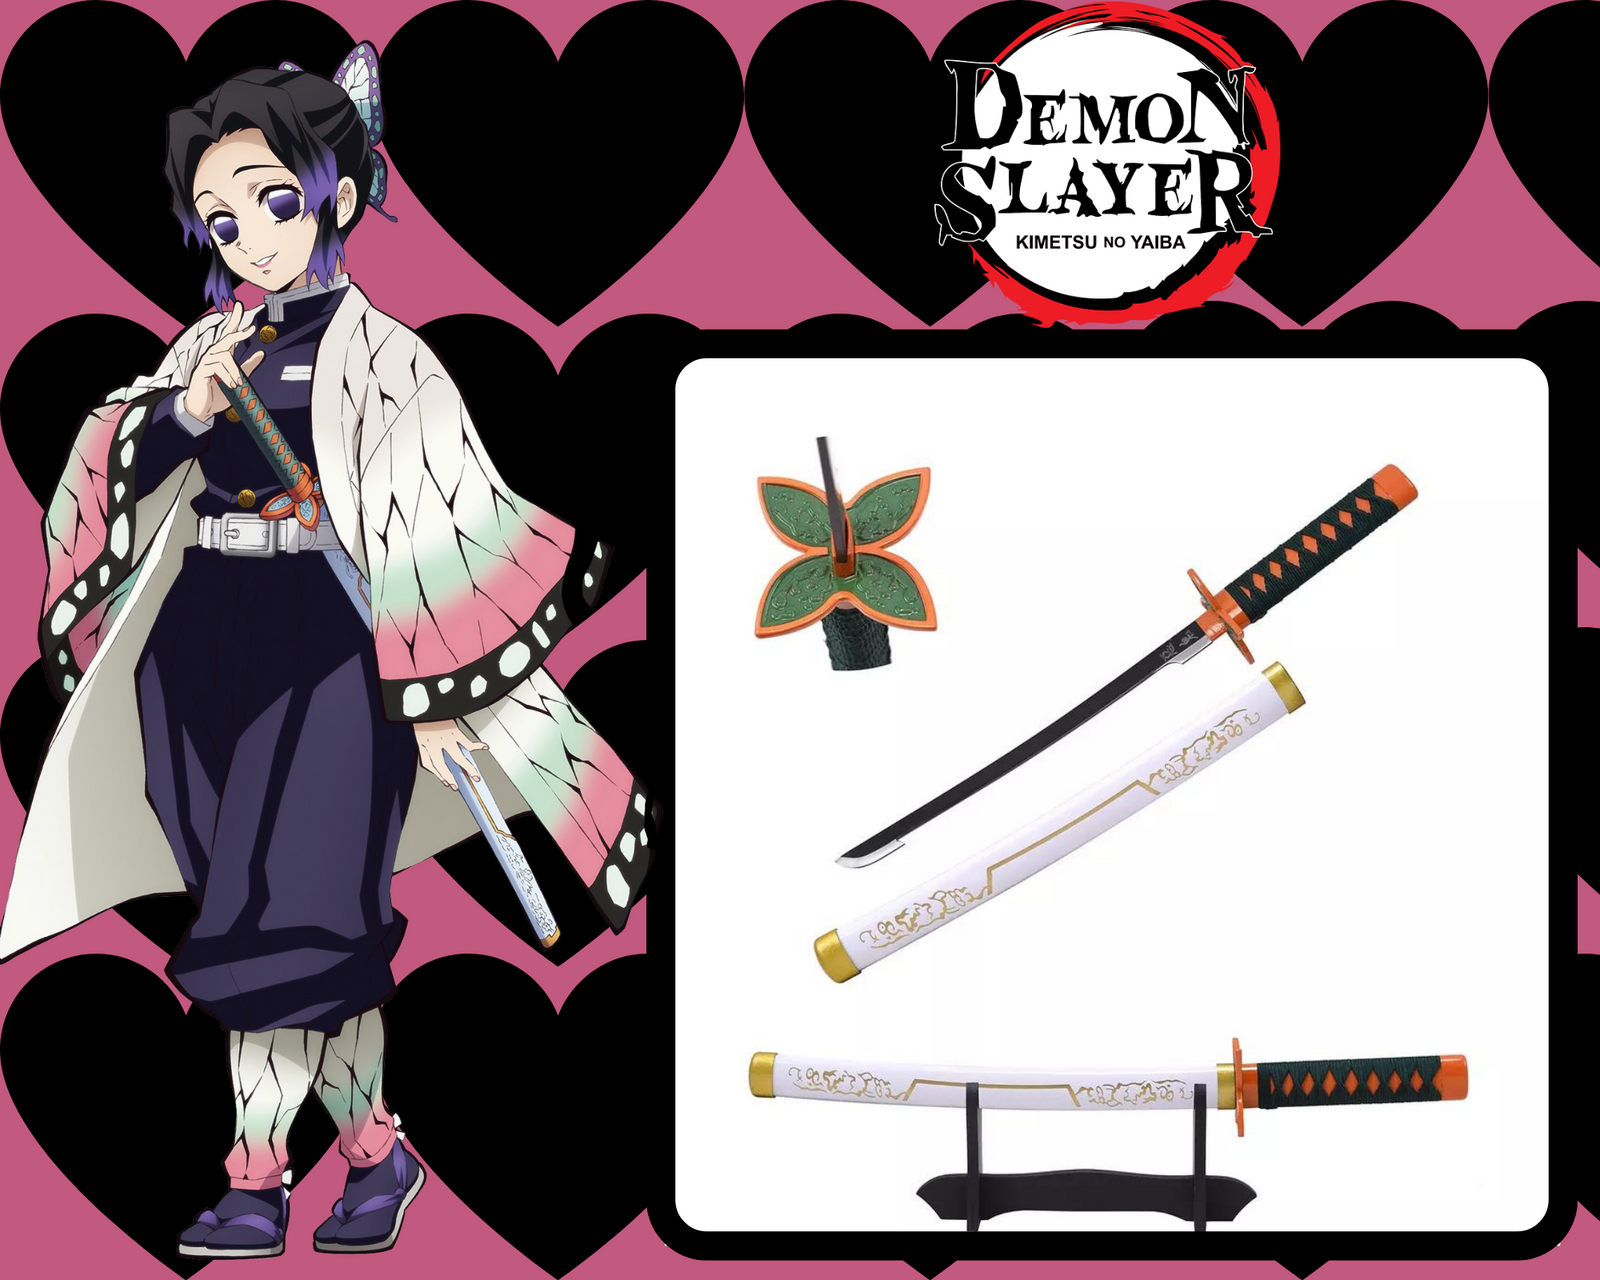 KOKUSHIBO MONSTER WOODEN SWORD - sword-anime